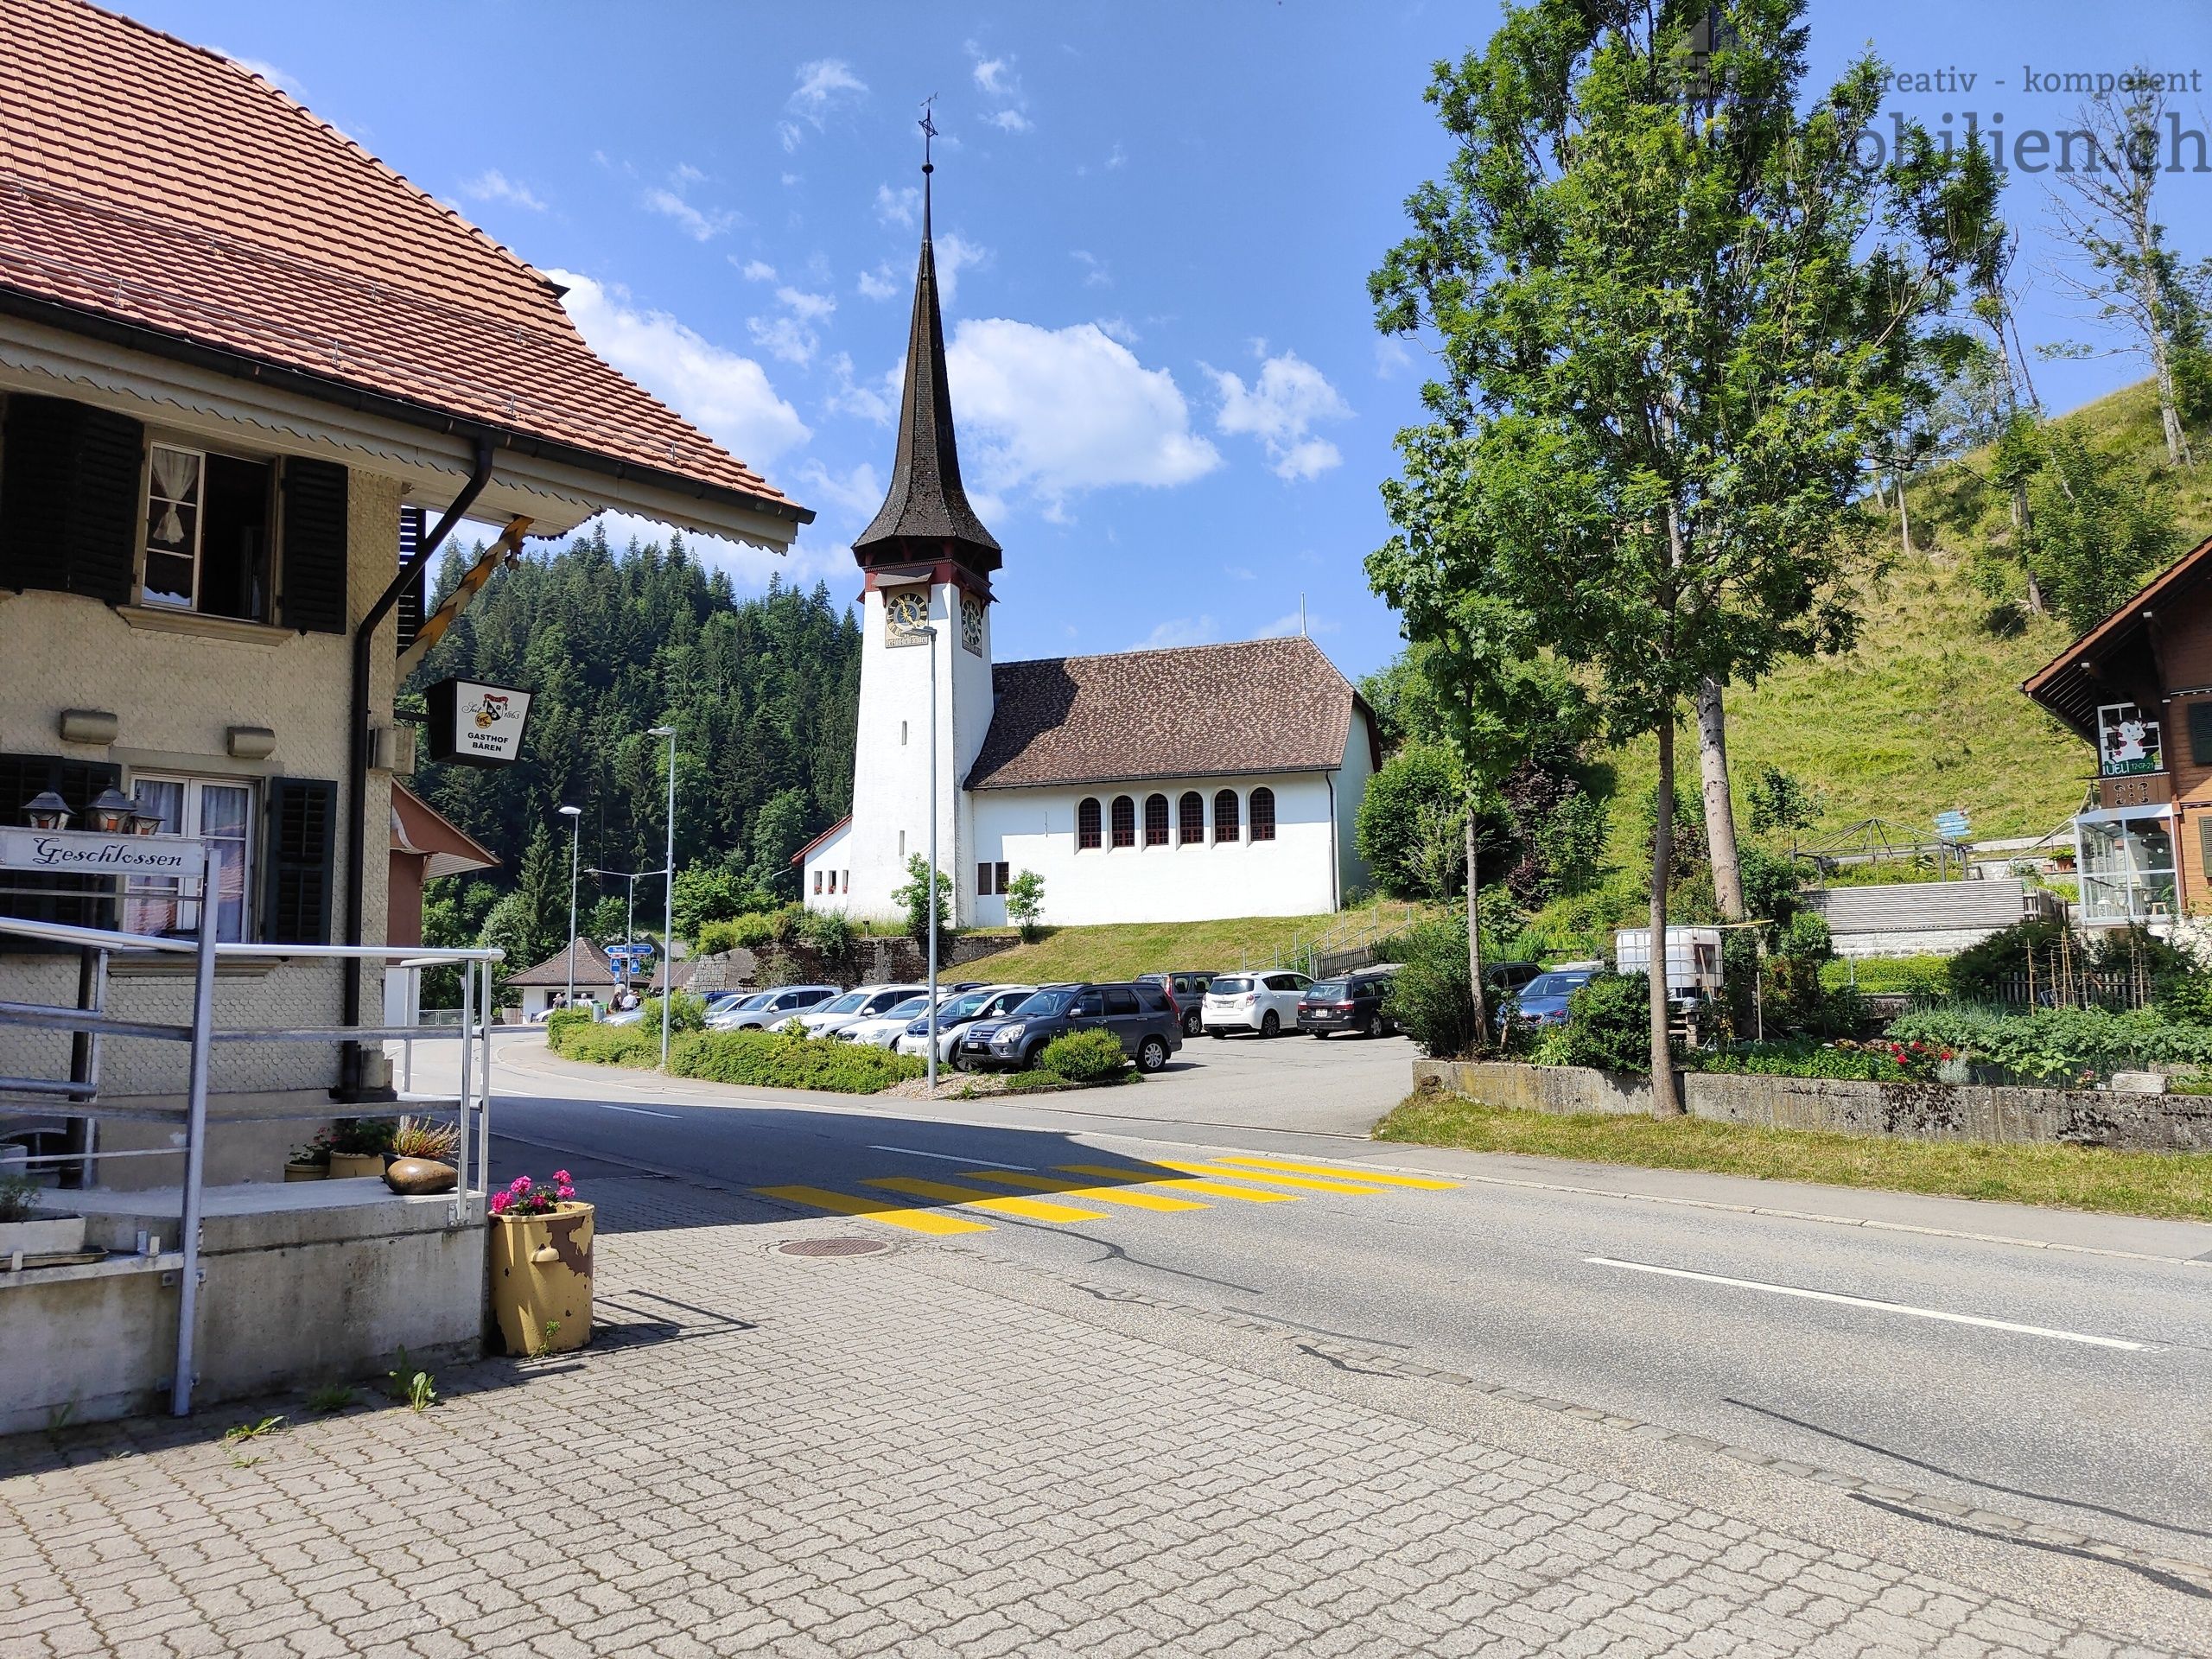 Der Bären mit der Kirche sind Teil eines schönen Dorfbildes